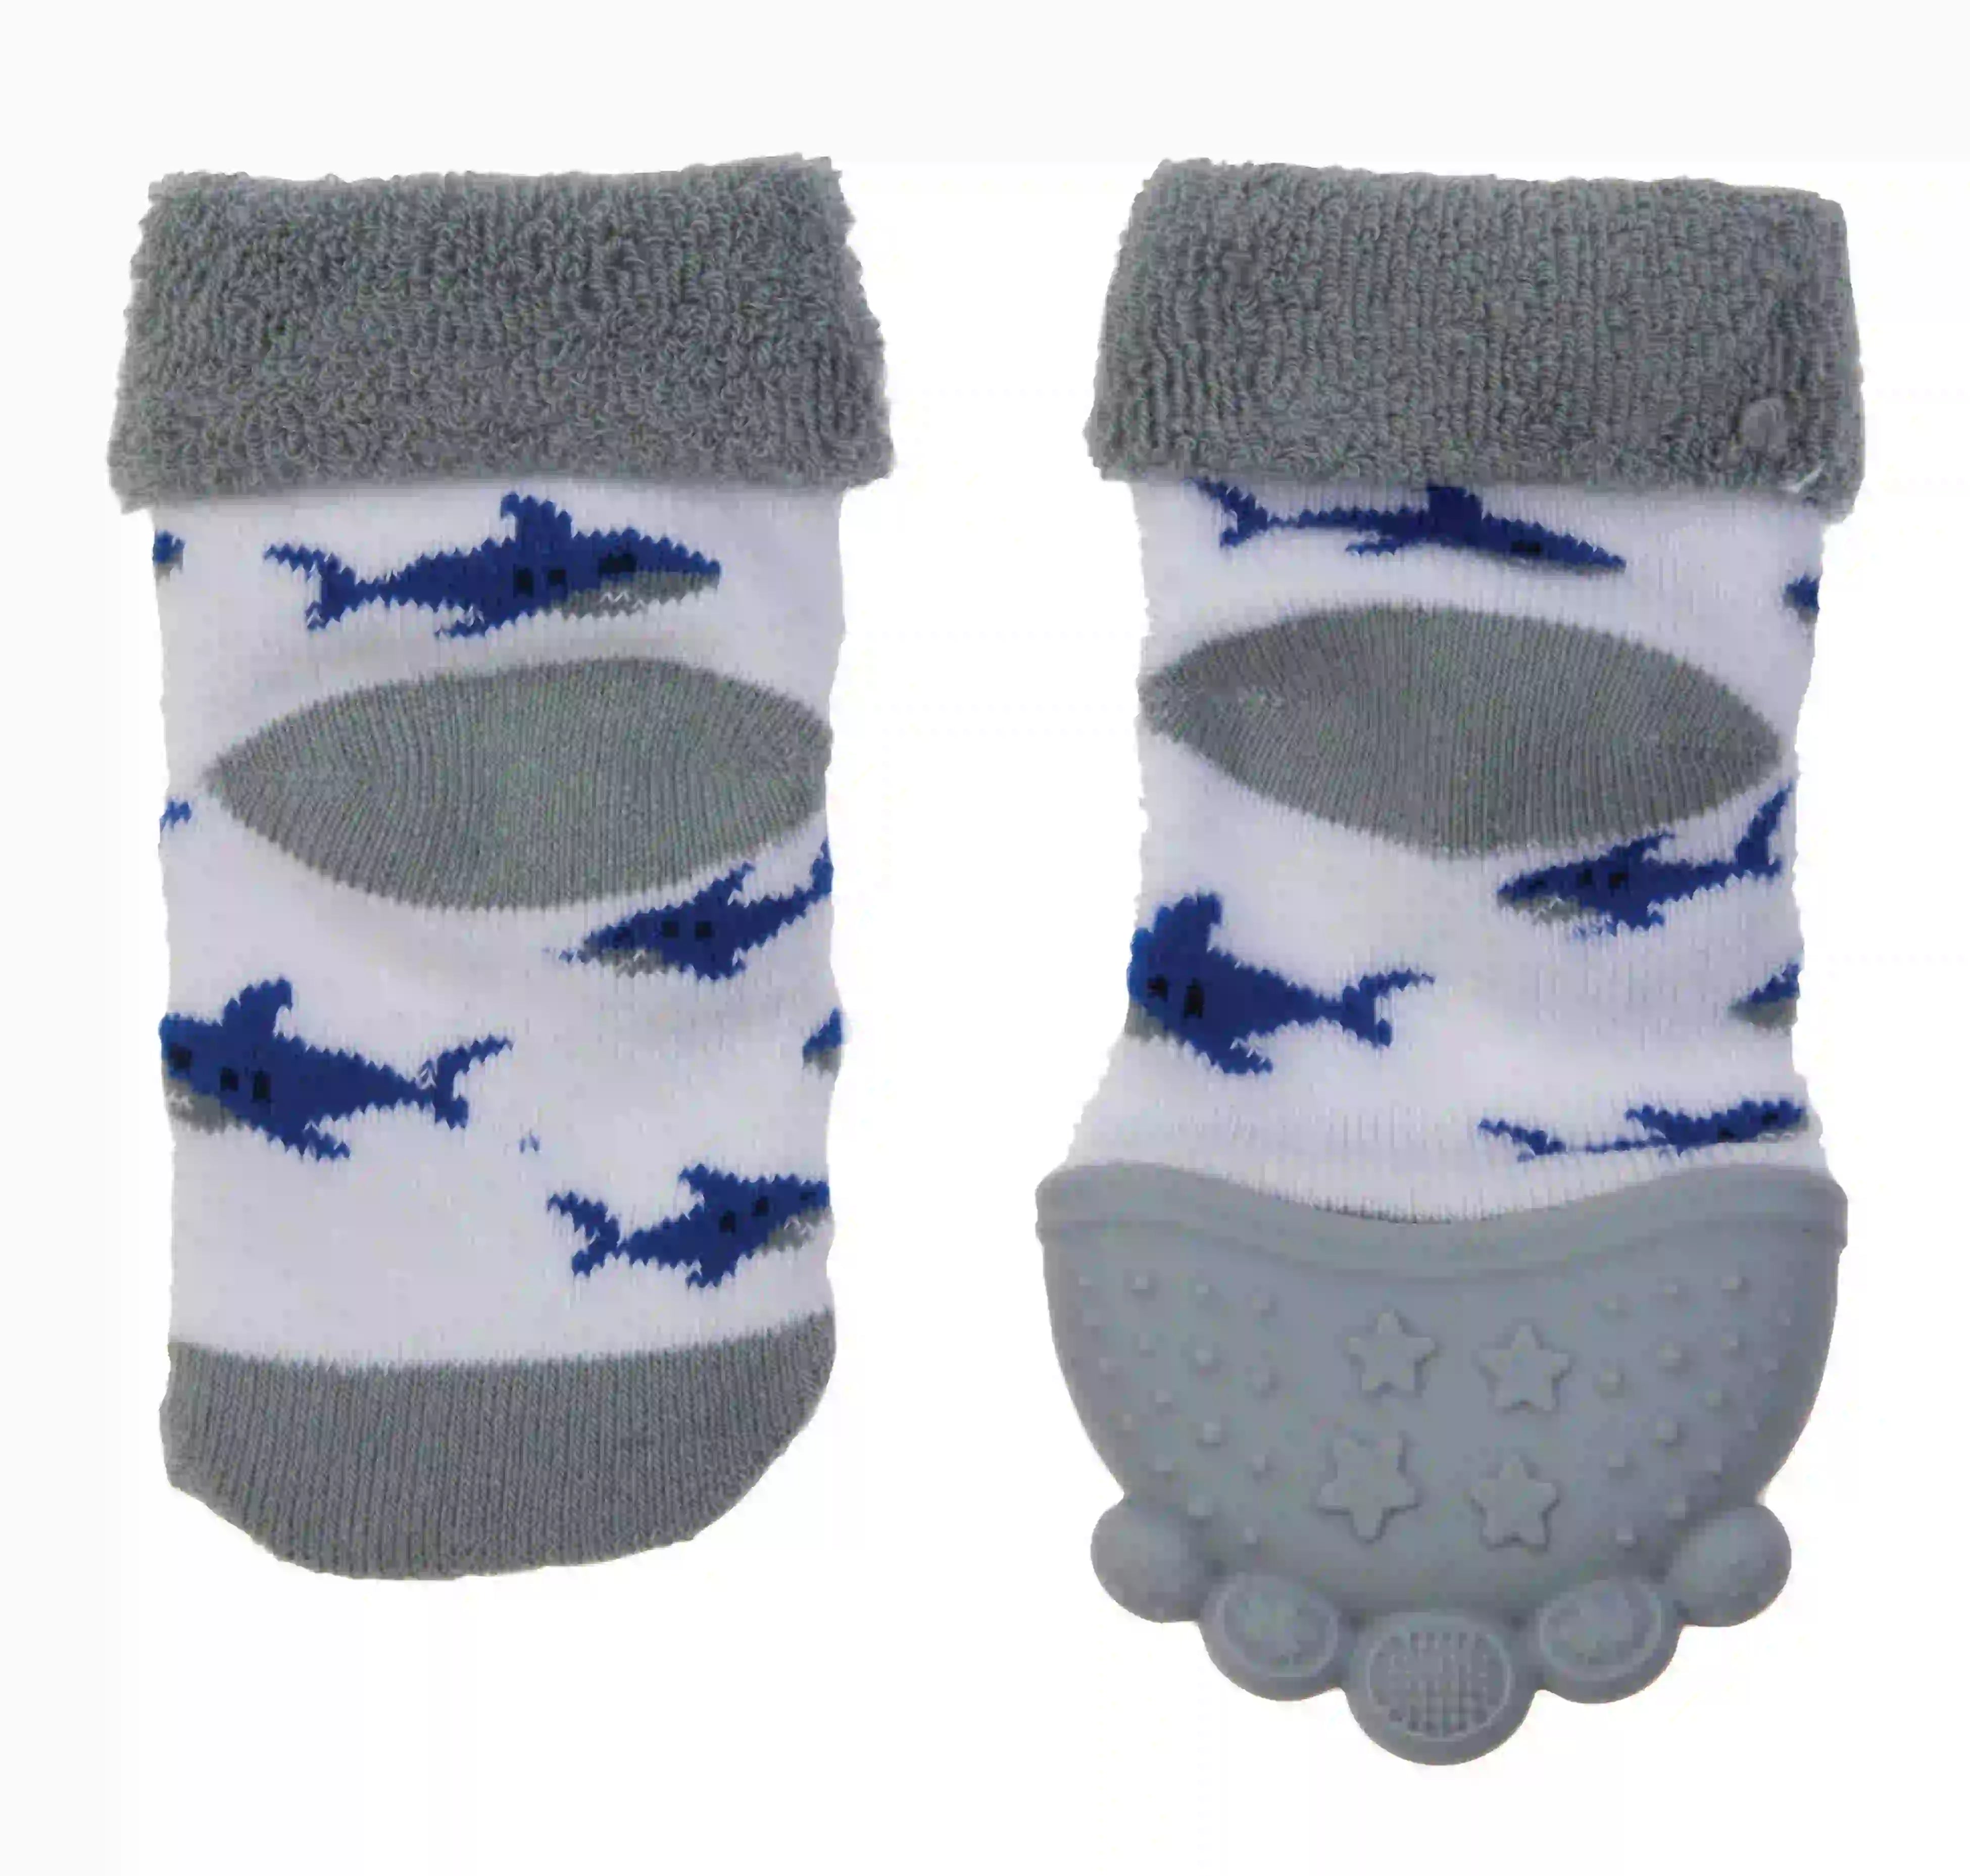 Nuby - Teething Socks - 1 Pack - 3M+